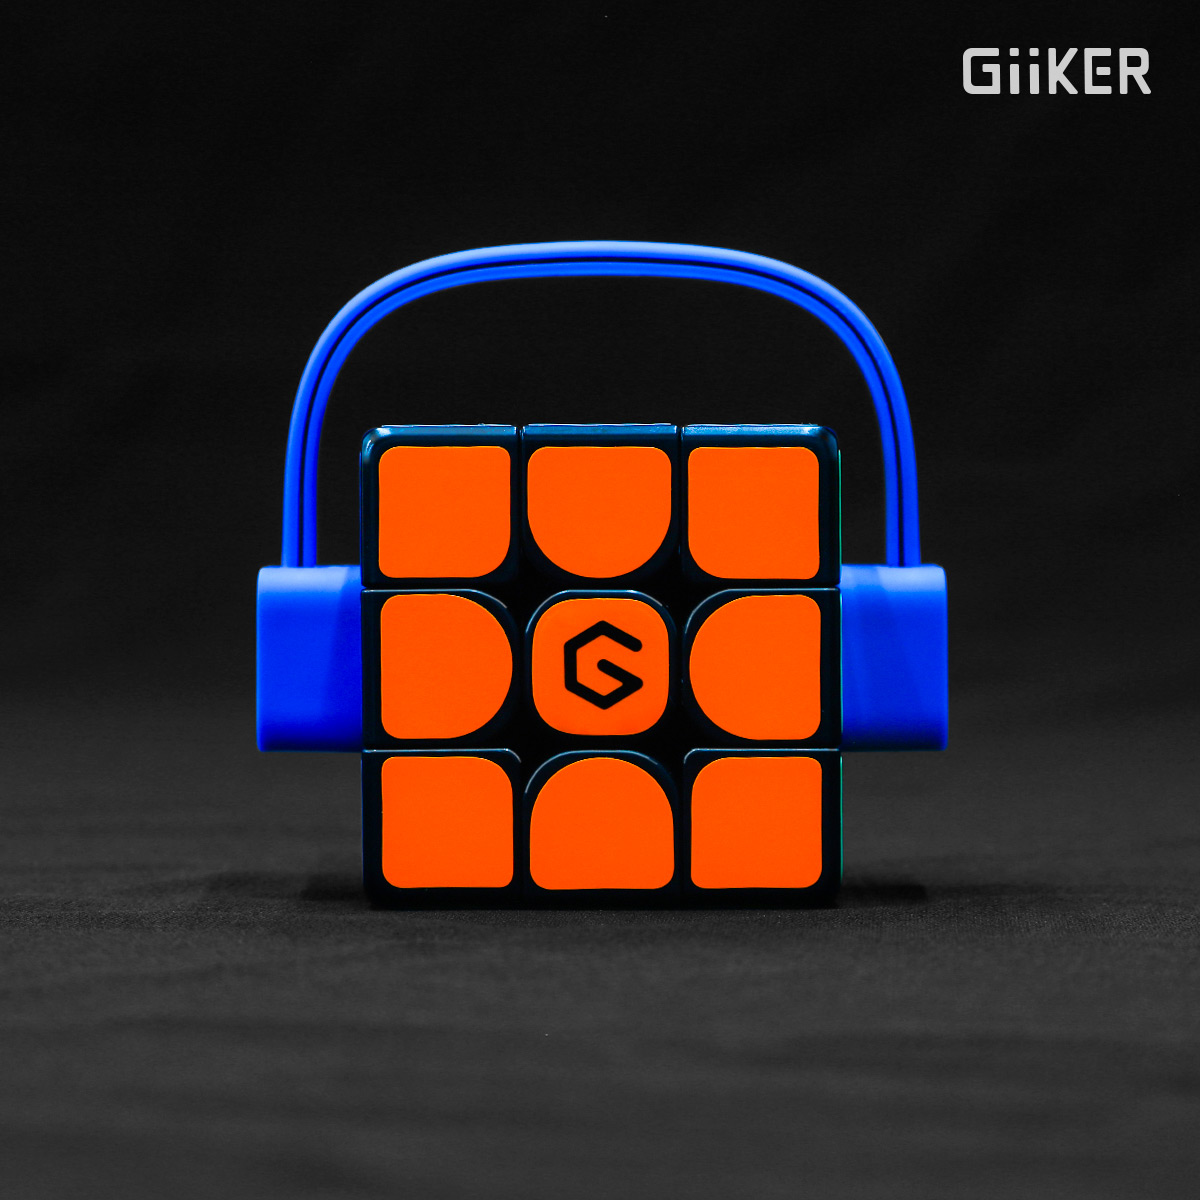 2394円 99％以上節約 Giiker - SUPERCUBE i3SE スーパーキューブ パズル アプリ キューブ Bluetooth 知育 脳トレ